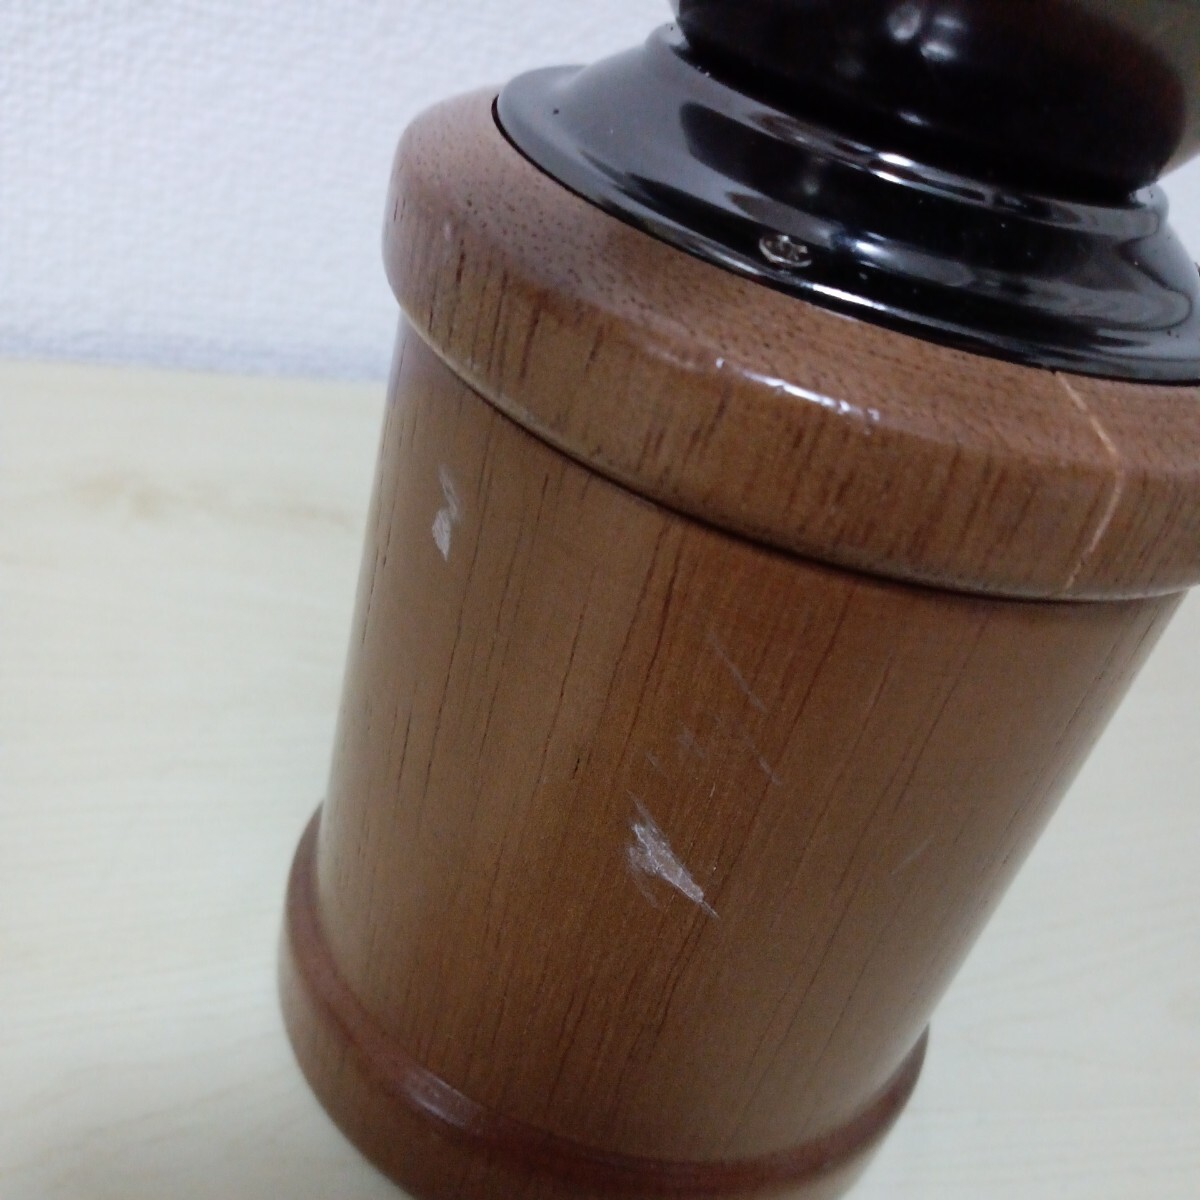 y031115r Carita Kalita кофемолка из дерева рука .. ручной античный кофе шлифовщик маленький размер 